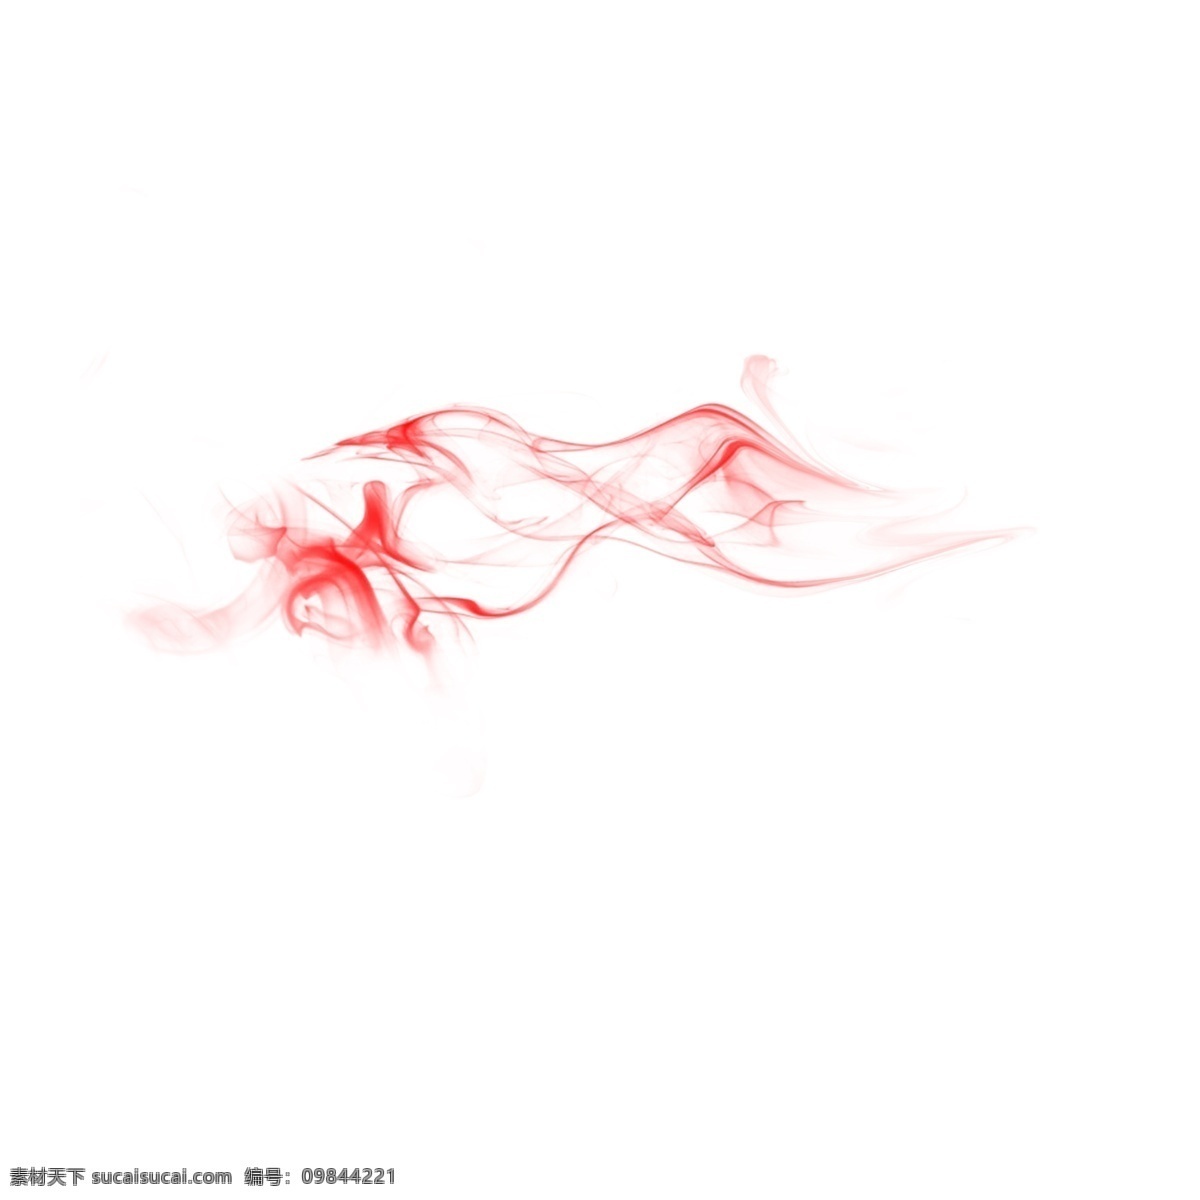 水彩 红色 烟雾 泼墨 卡通 手绘 创意 美丽 缭绕 环绕 颗粒 漂浮 抽象 个性 中国风 绘画 书画